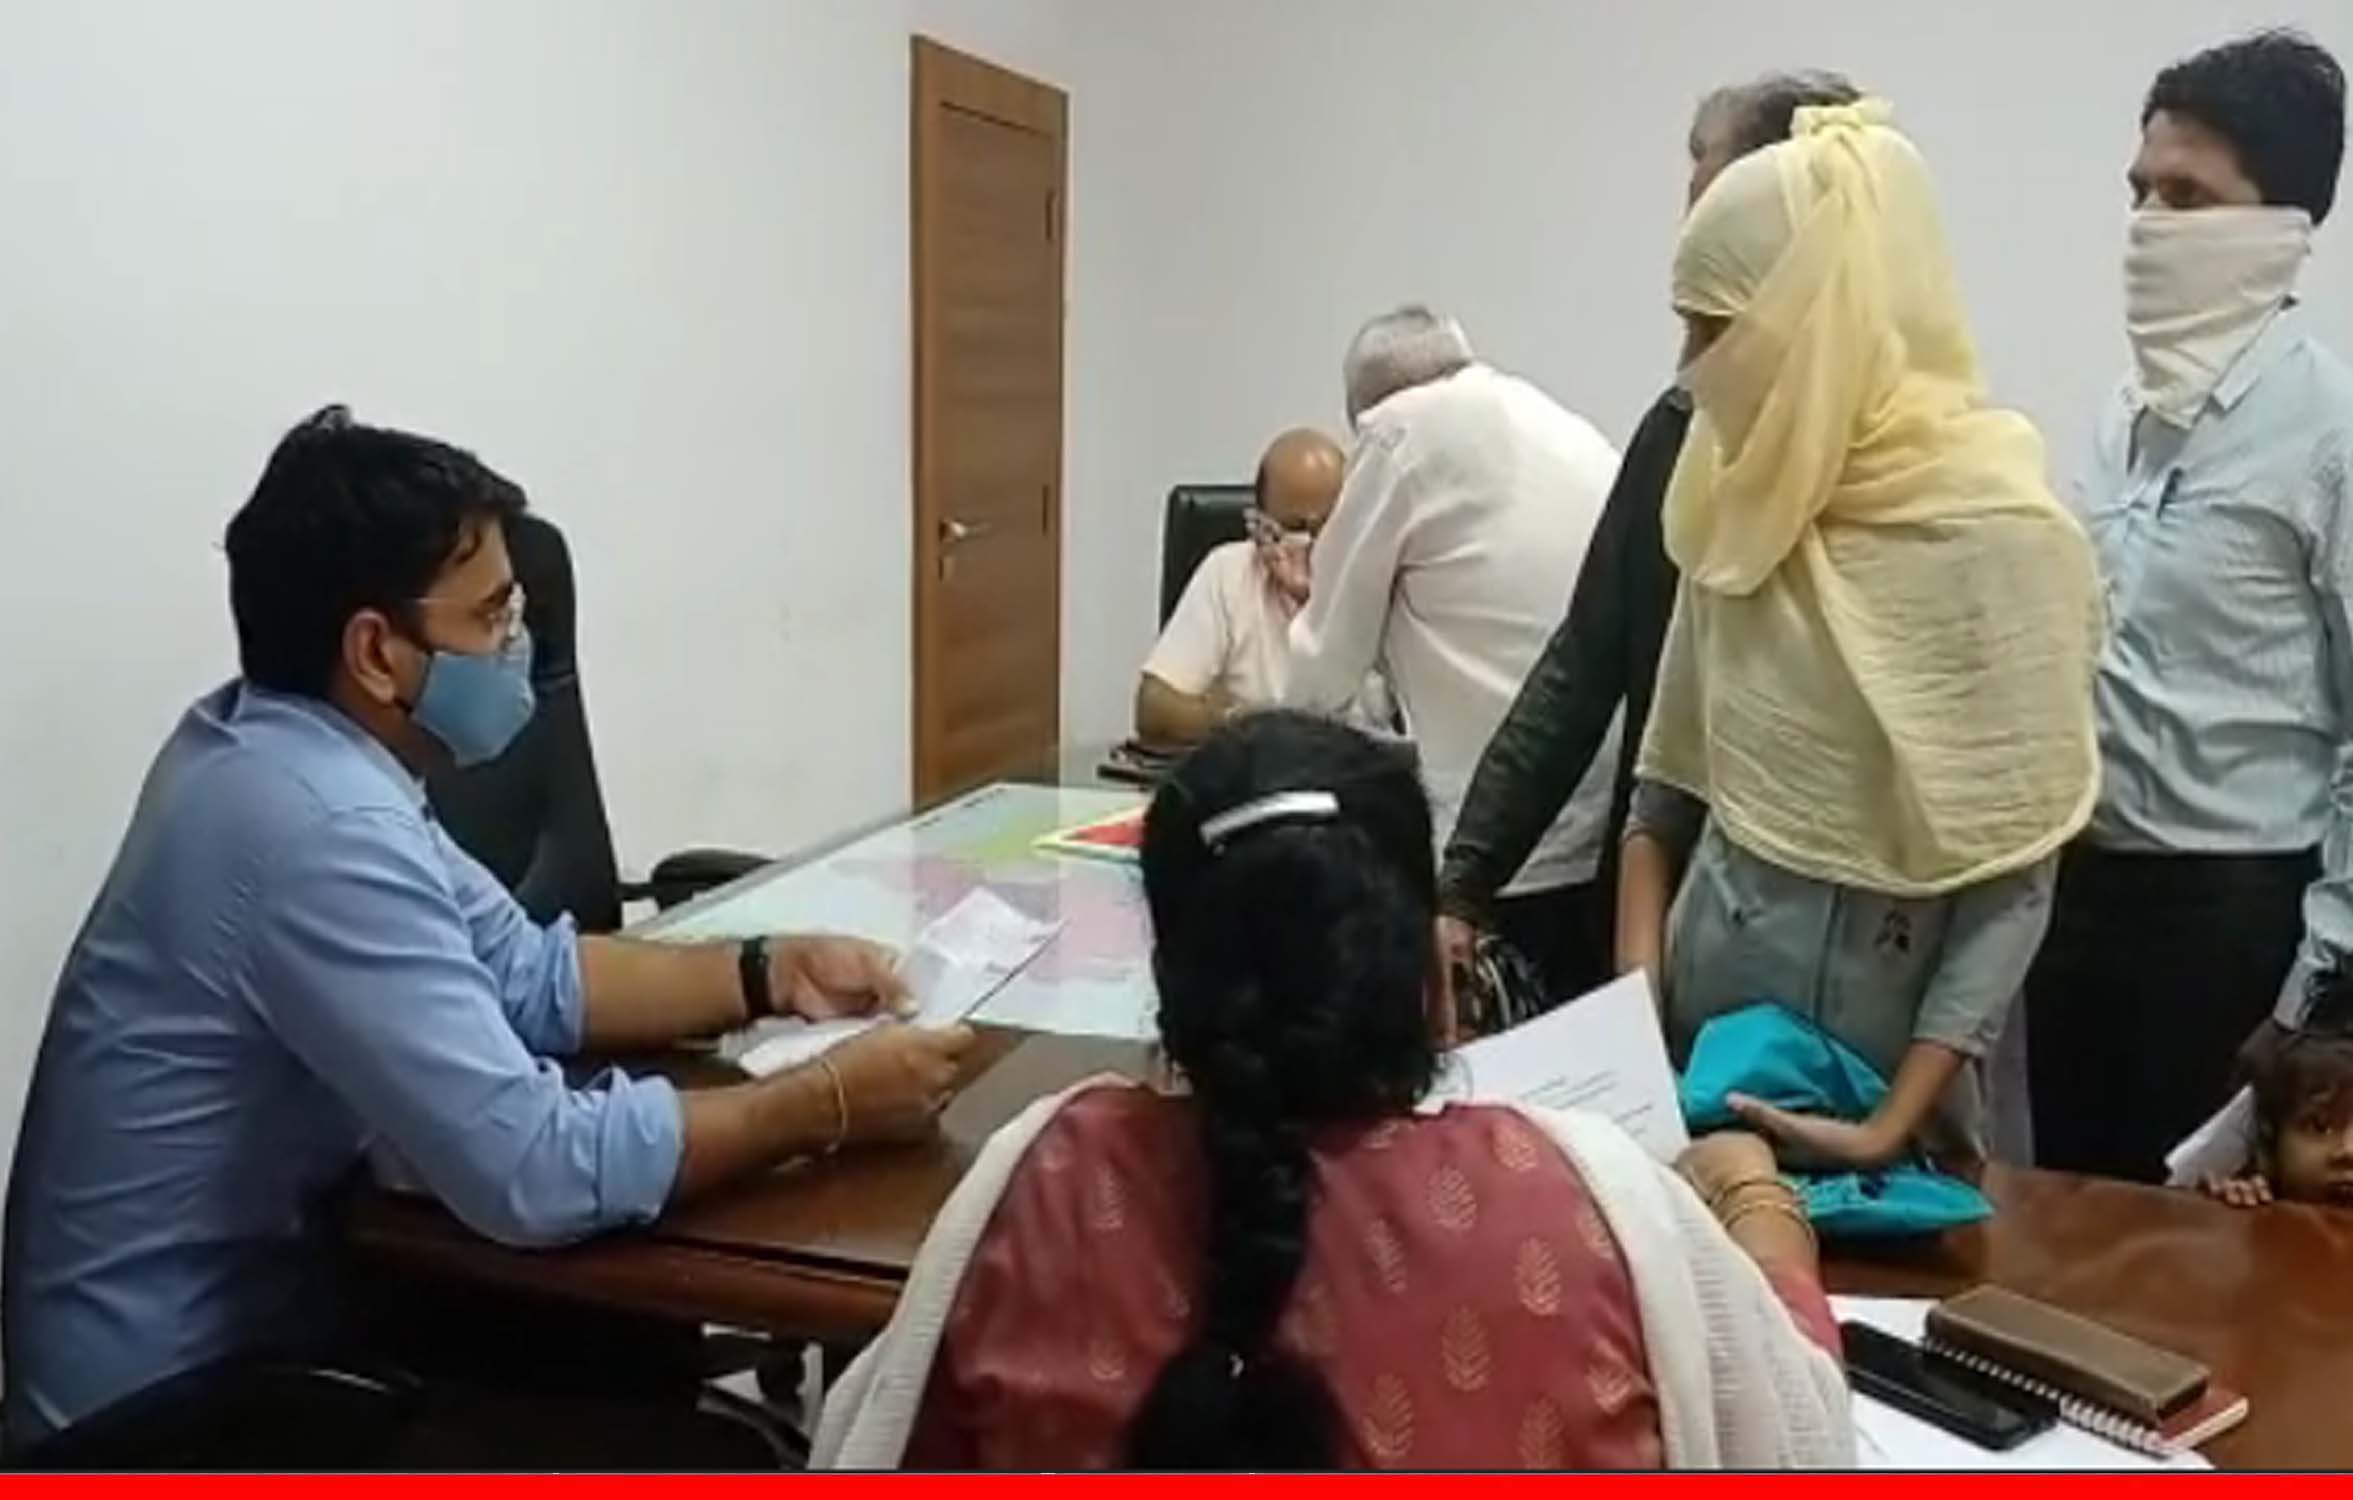 जबलपुर: कोरोना वैक्सीन लगवाने के बाद युवती का चेहरा हुआ टेढ़ा, कलेक्टर से की शिकायत